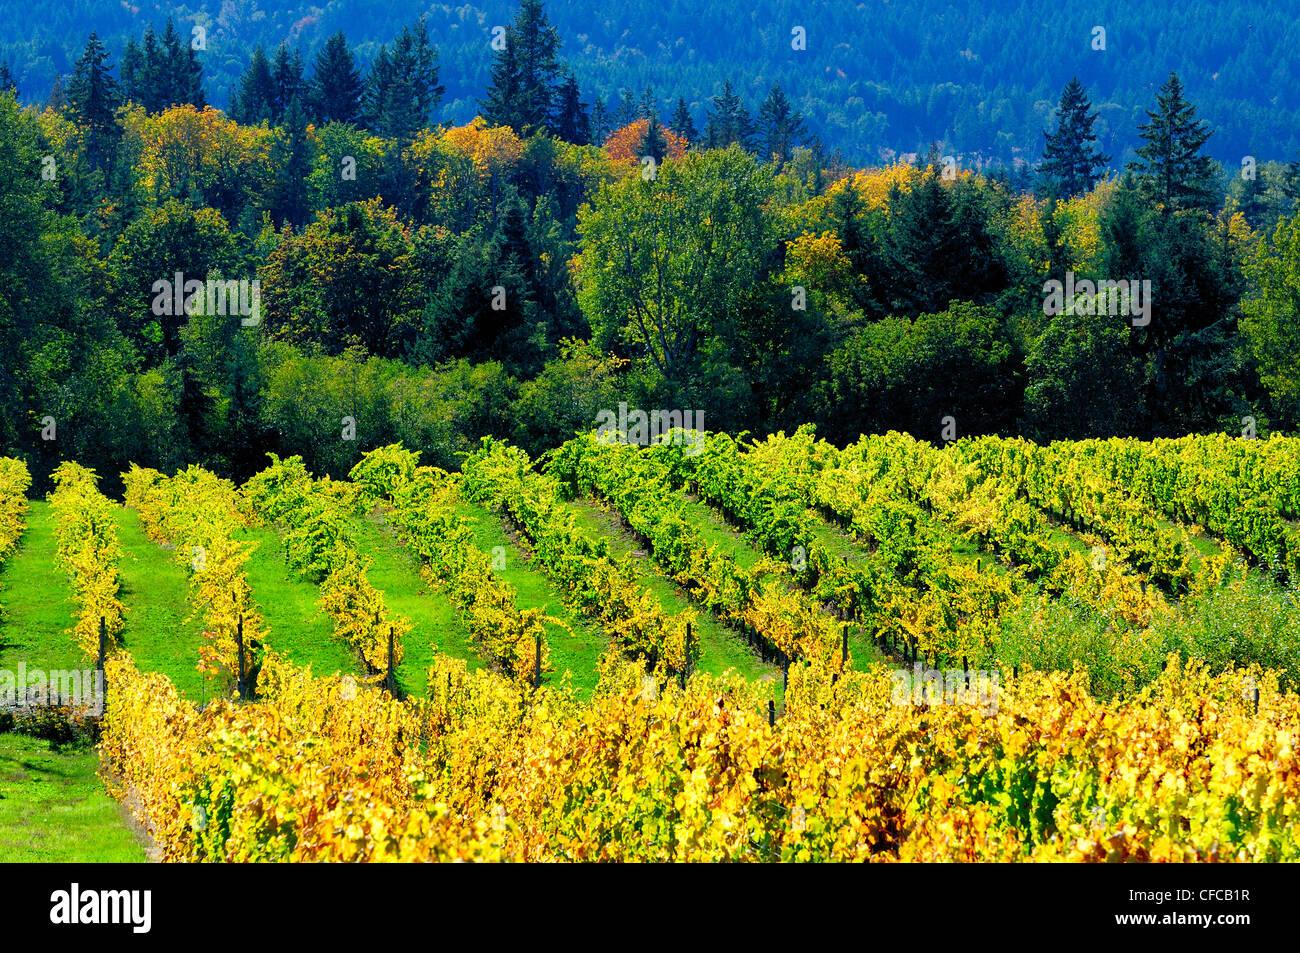 La couleur de l'automne et de vignes dans un vignoble à Glenora, près de Duncan, Colombie-Britannique, Canada Banque D'Images